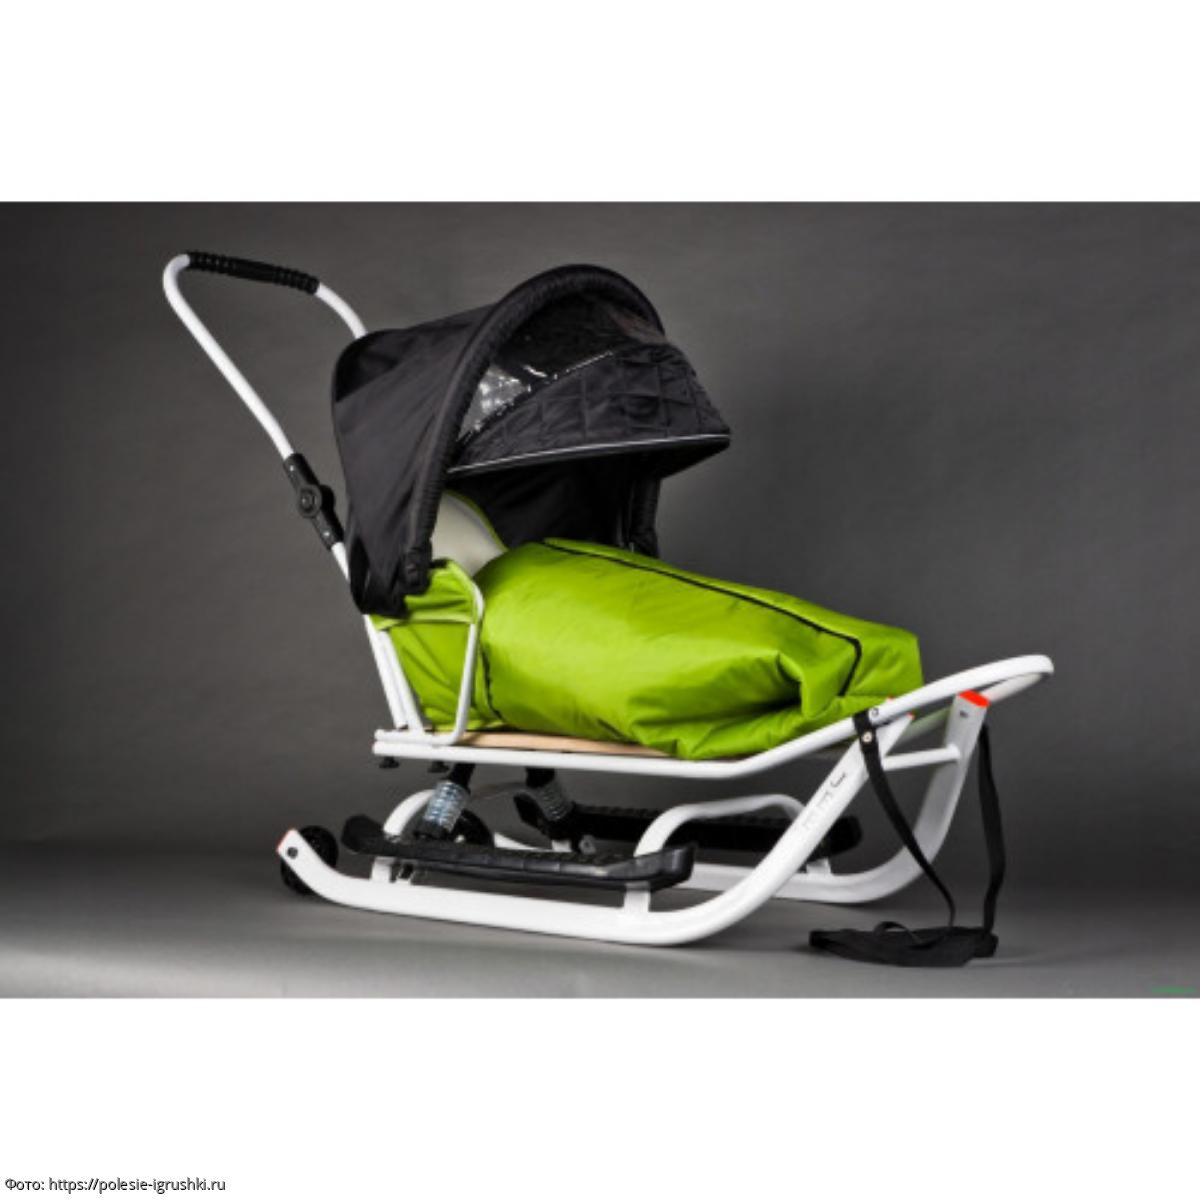 Рейтинг ТОП-10 популярных моделей санок-колясок для детей